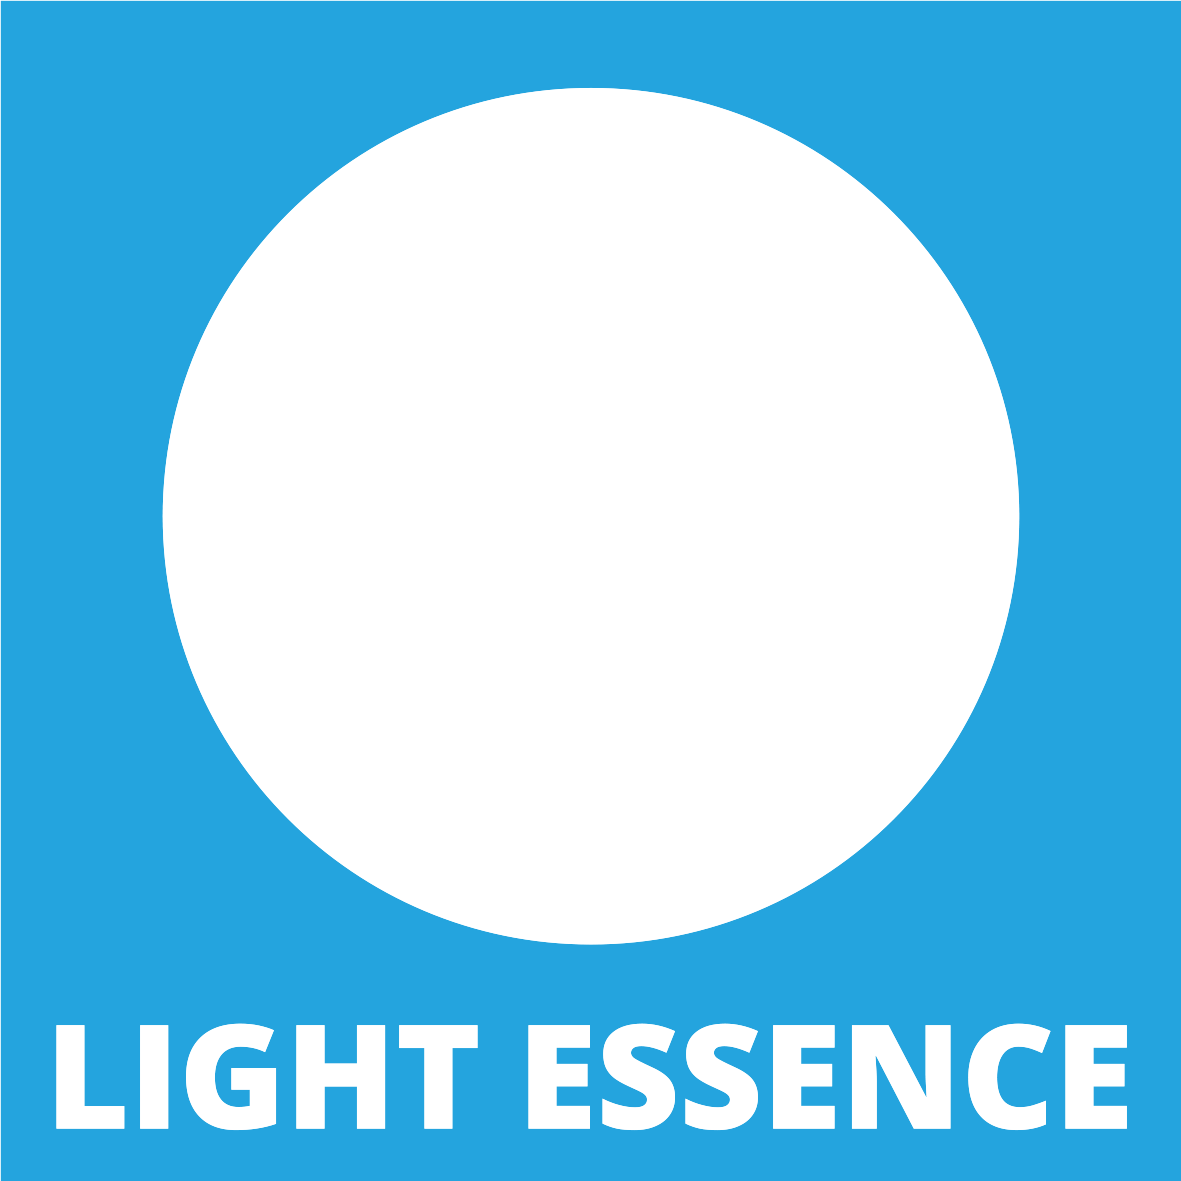 Light Essence